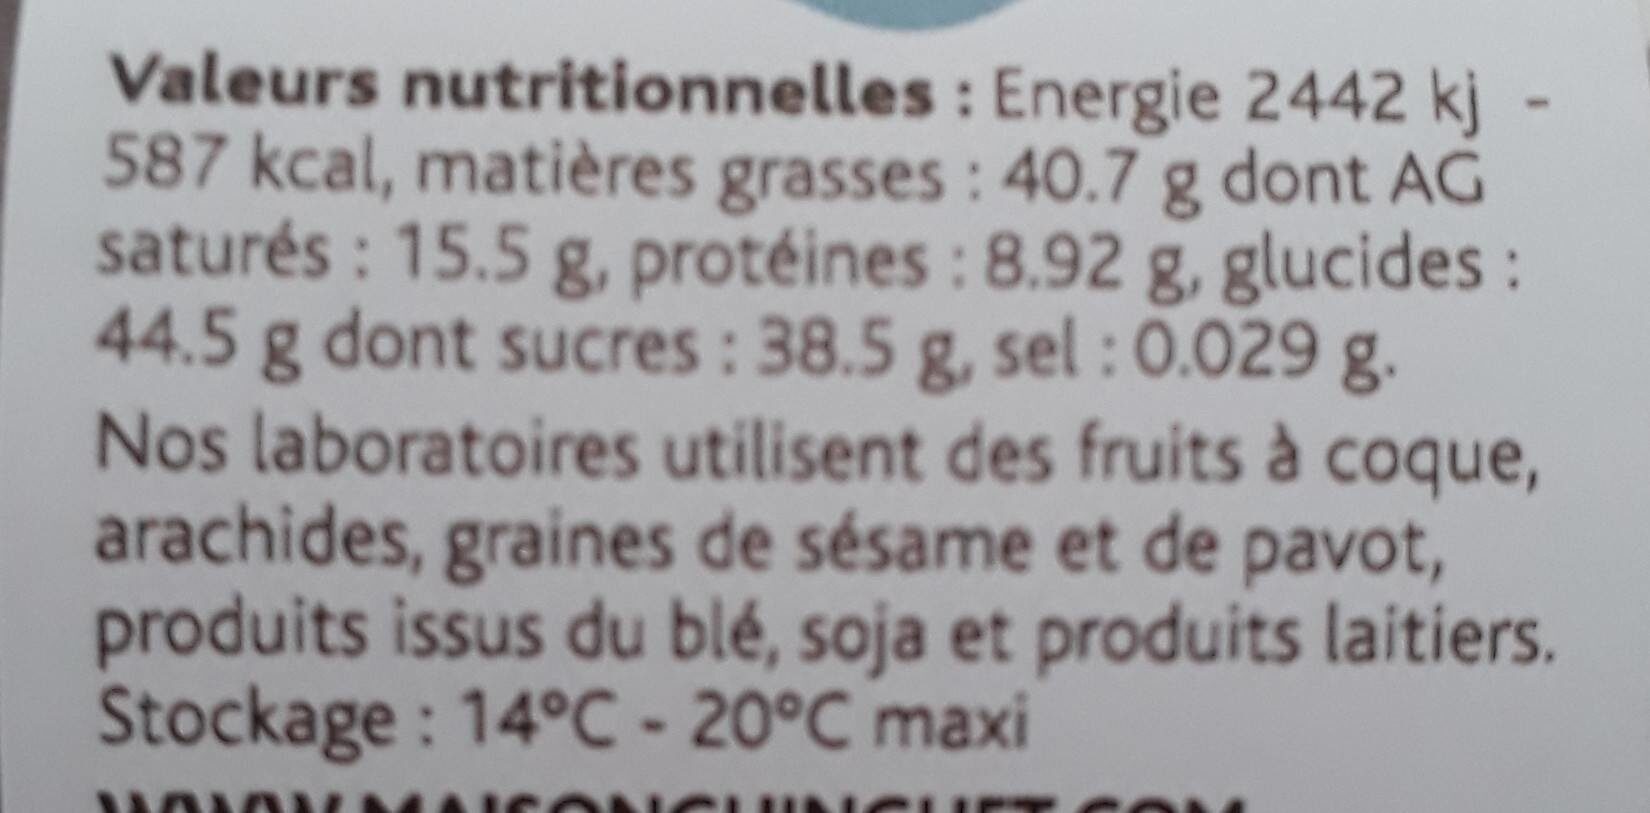 Mes petites noisettes - Nutrition facts - fr